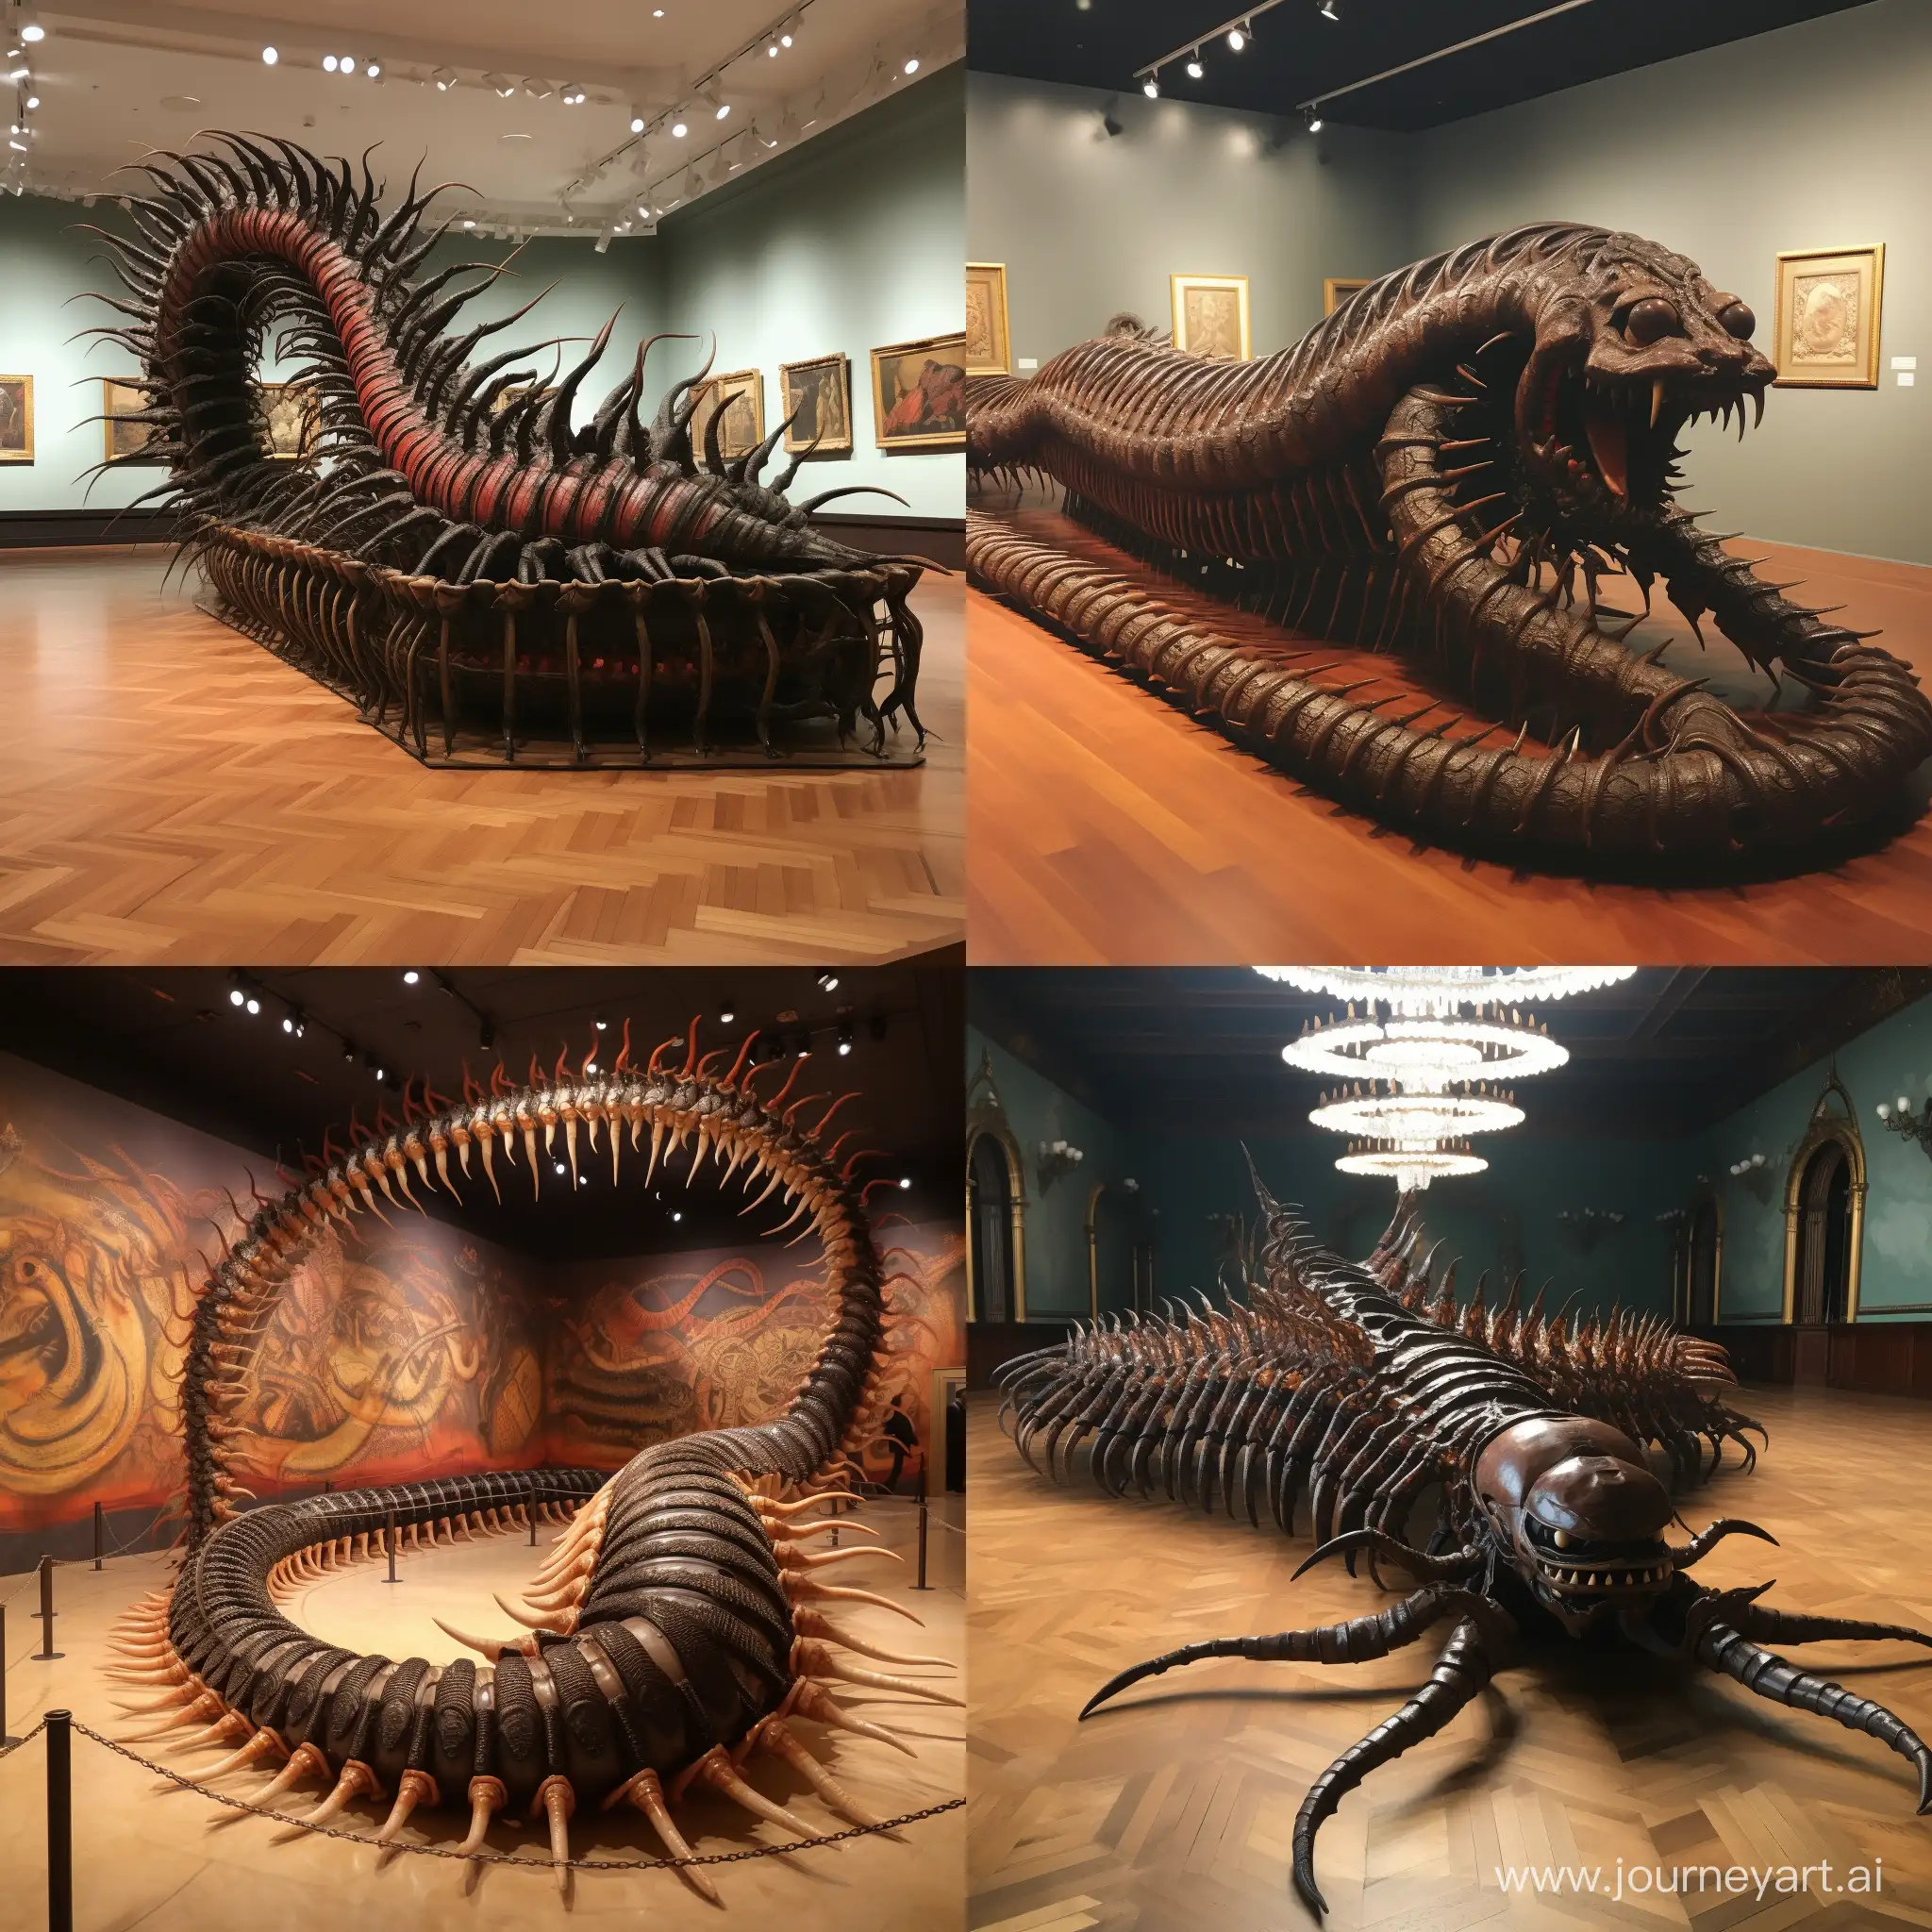 centipede replica in a museum